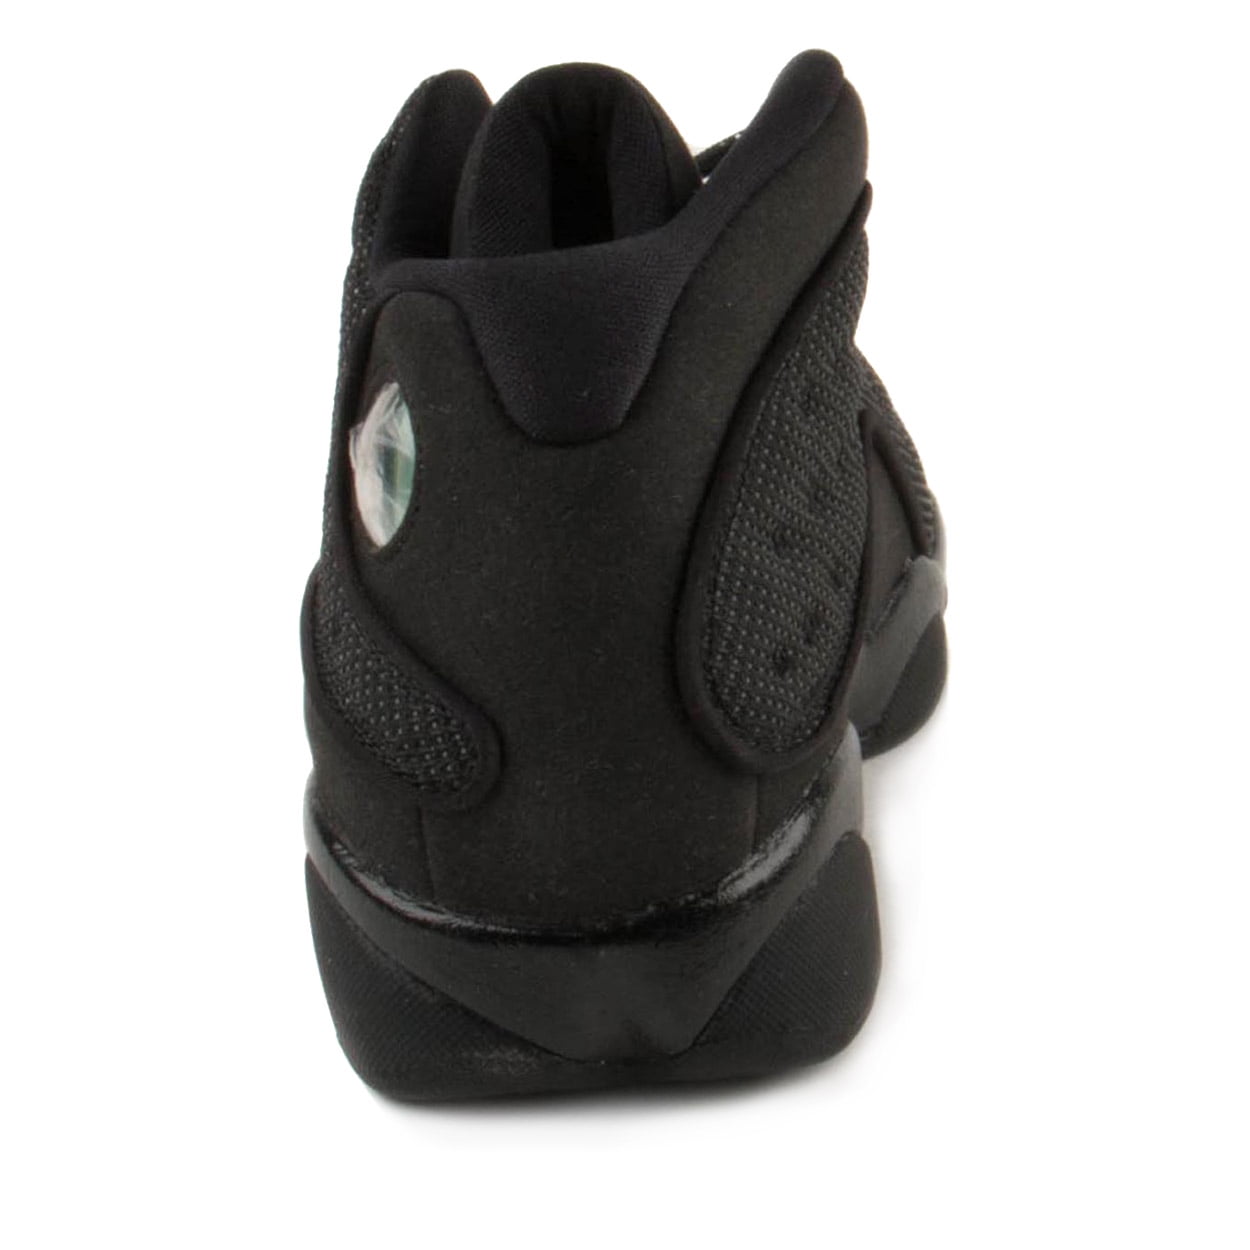 Air Jordan 13 Retro “Black Cat” – CommonGround12